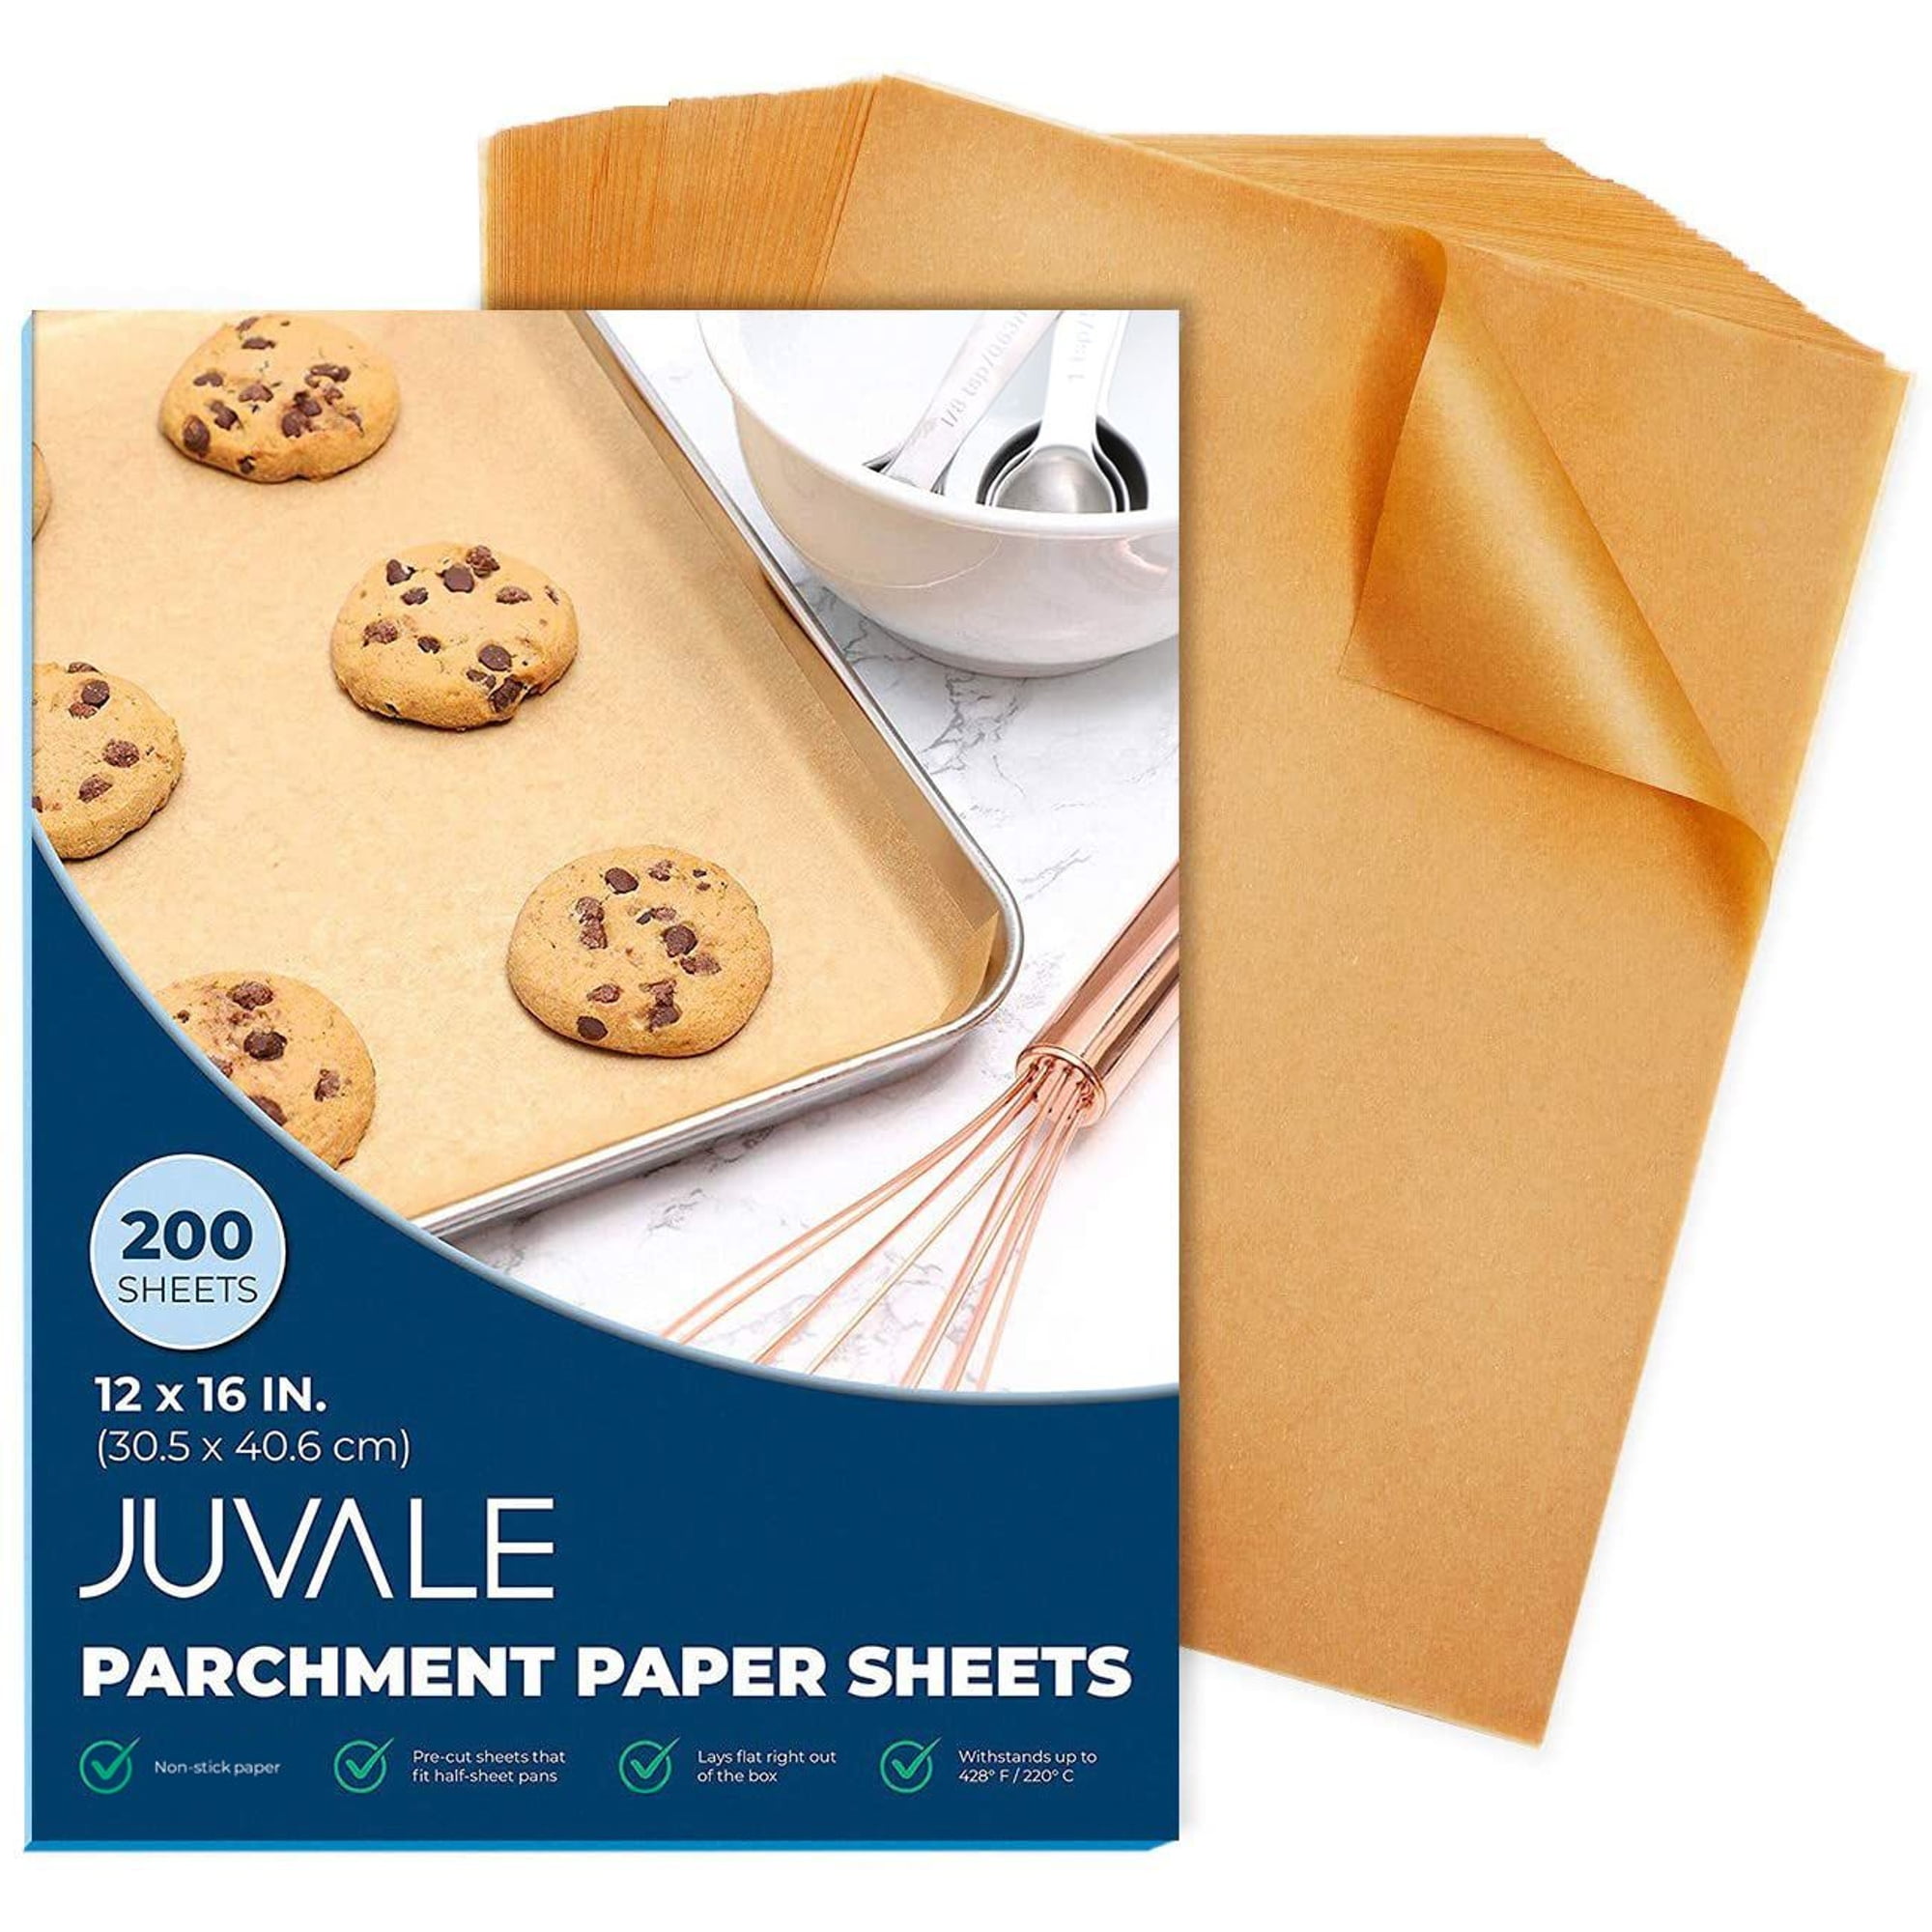 Kalhoof Premium Pre Cut Unbleached Parchment Paper – KALHOOF